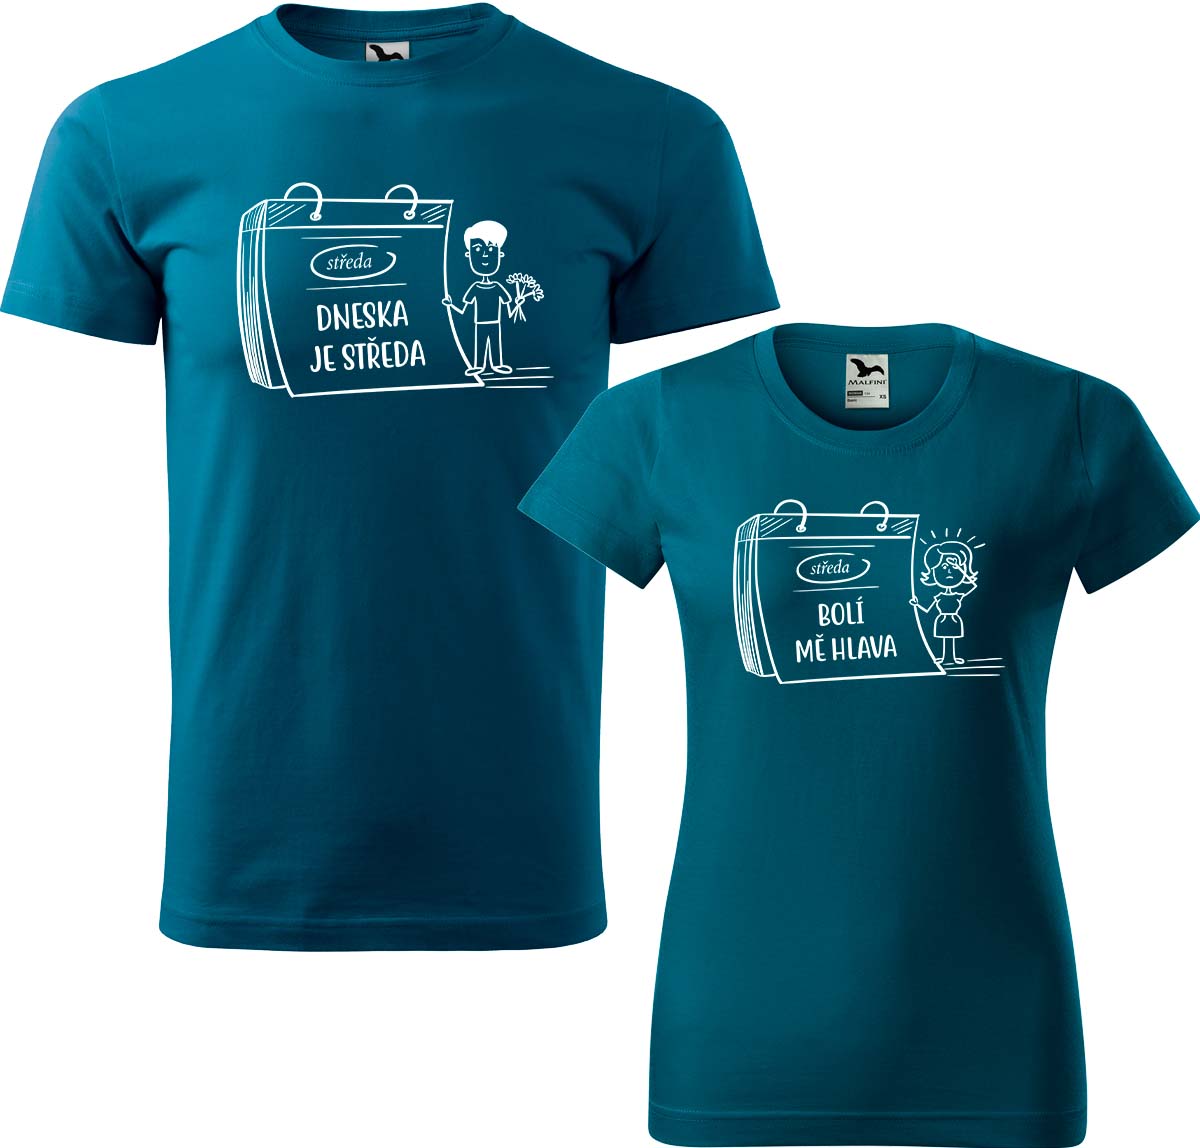 Trička pro páry - Dneska je středa Barva: Petrolejová (93), Velikost dámské tričko: S, Velikost pánské tričko: XL